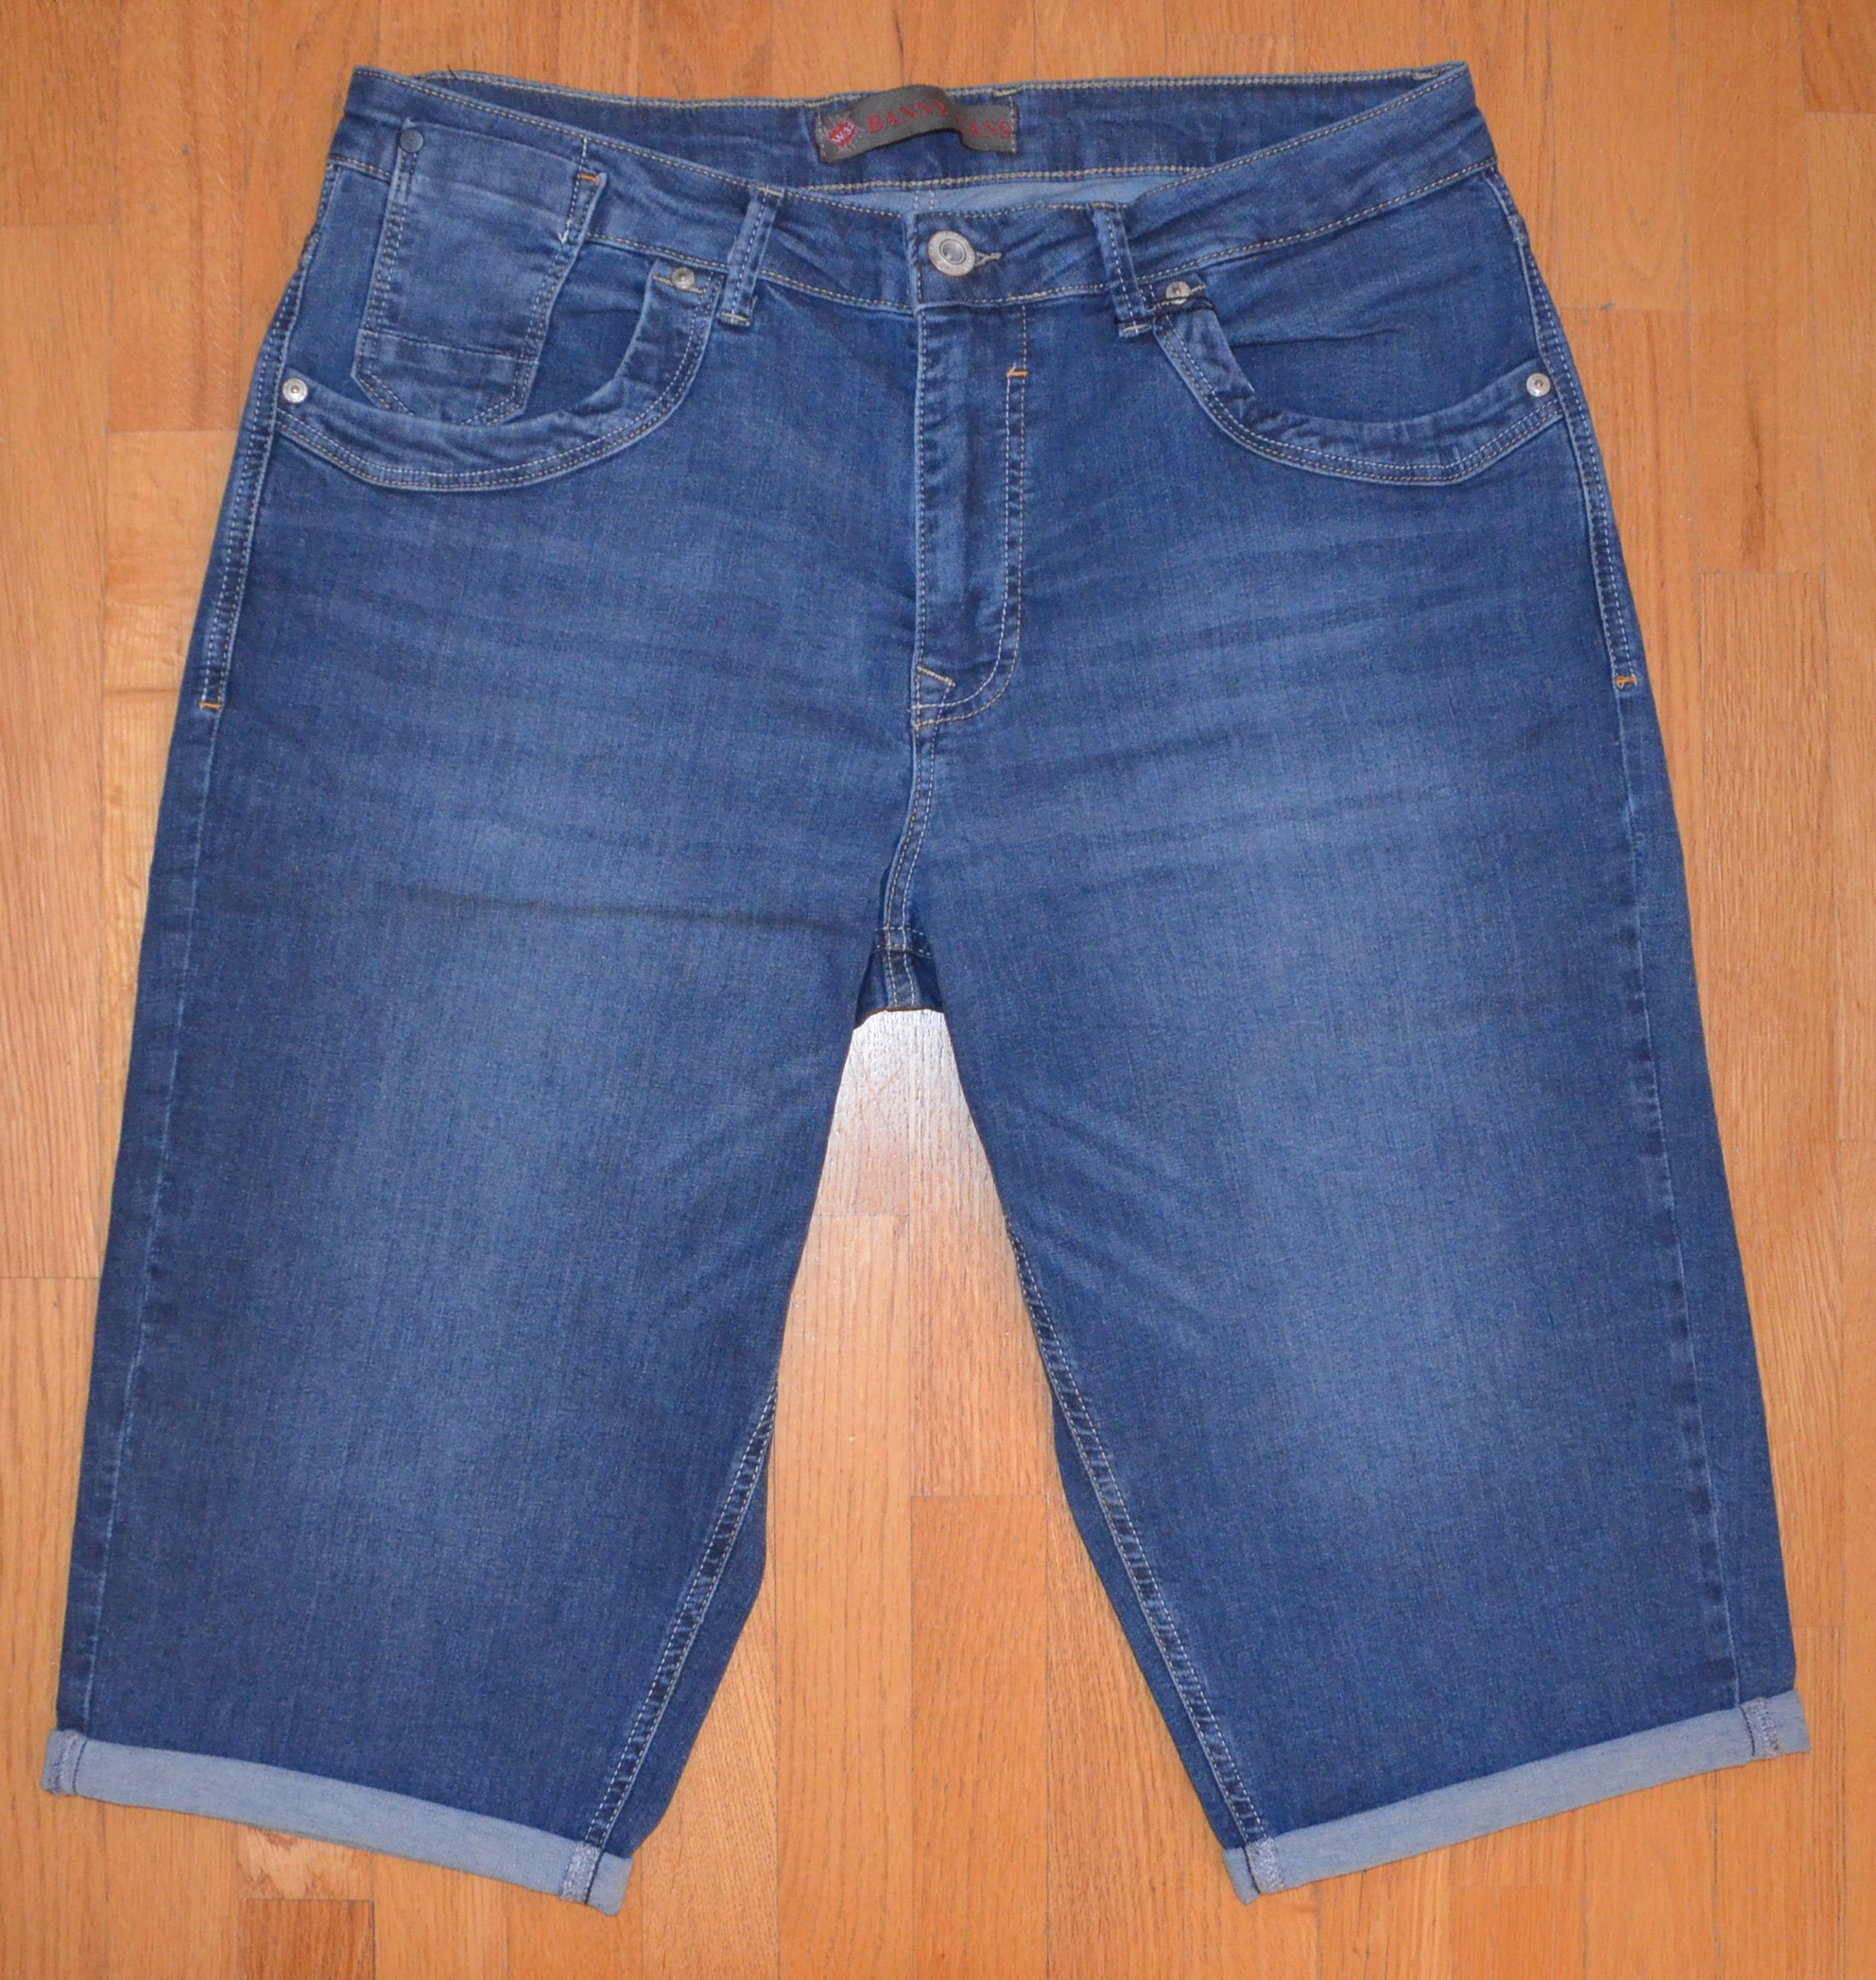 Pánské džínové šortky Banny Jeans P-2706 Velikost: 38